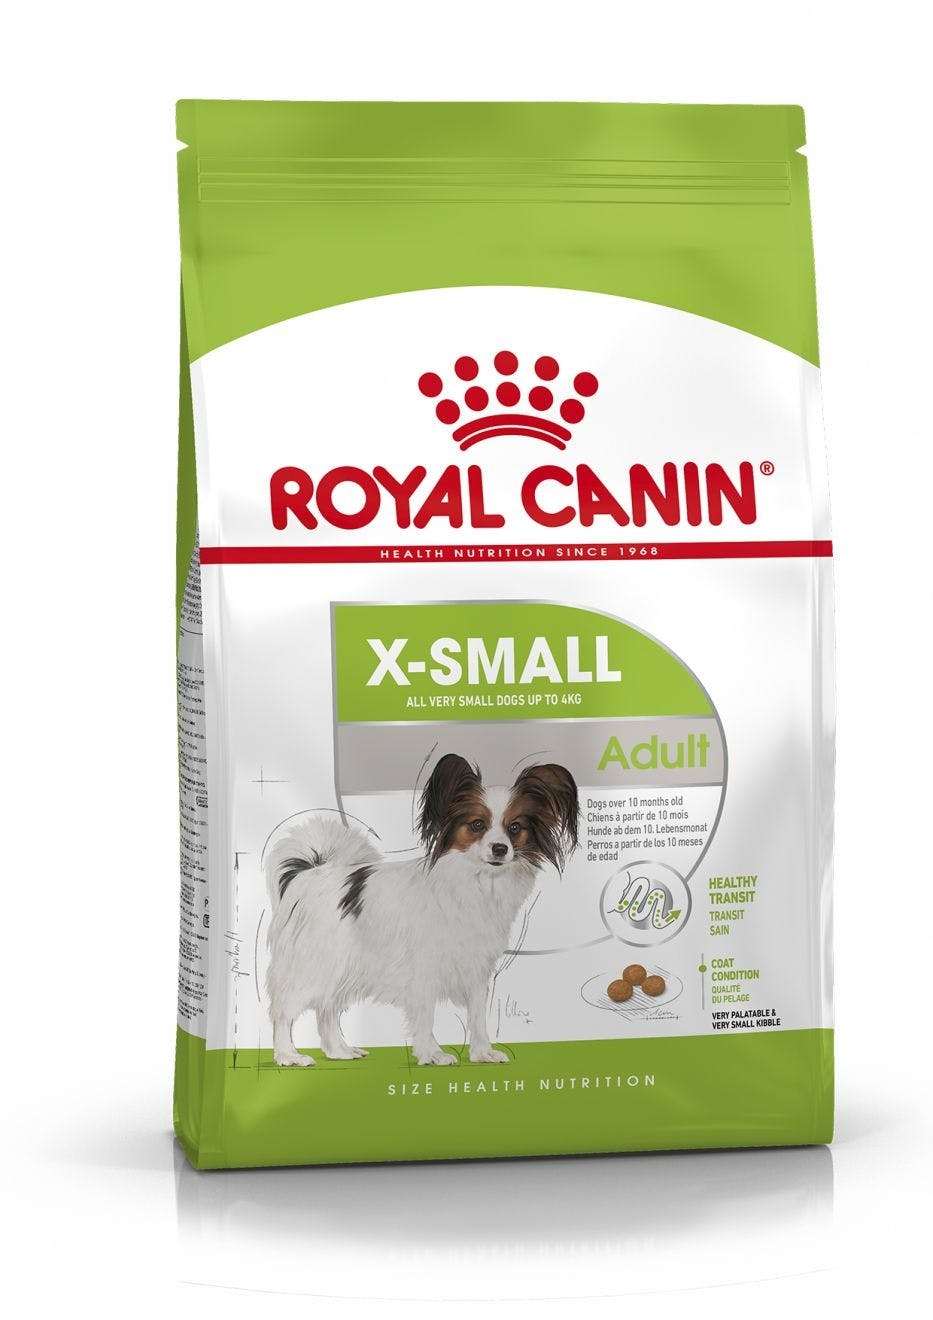 Billede af Royal Canin XSmall Adult - over 10 måneder. op til 4 kg hund.